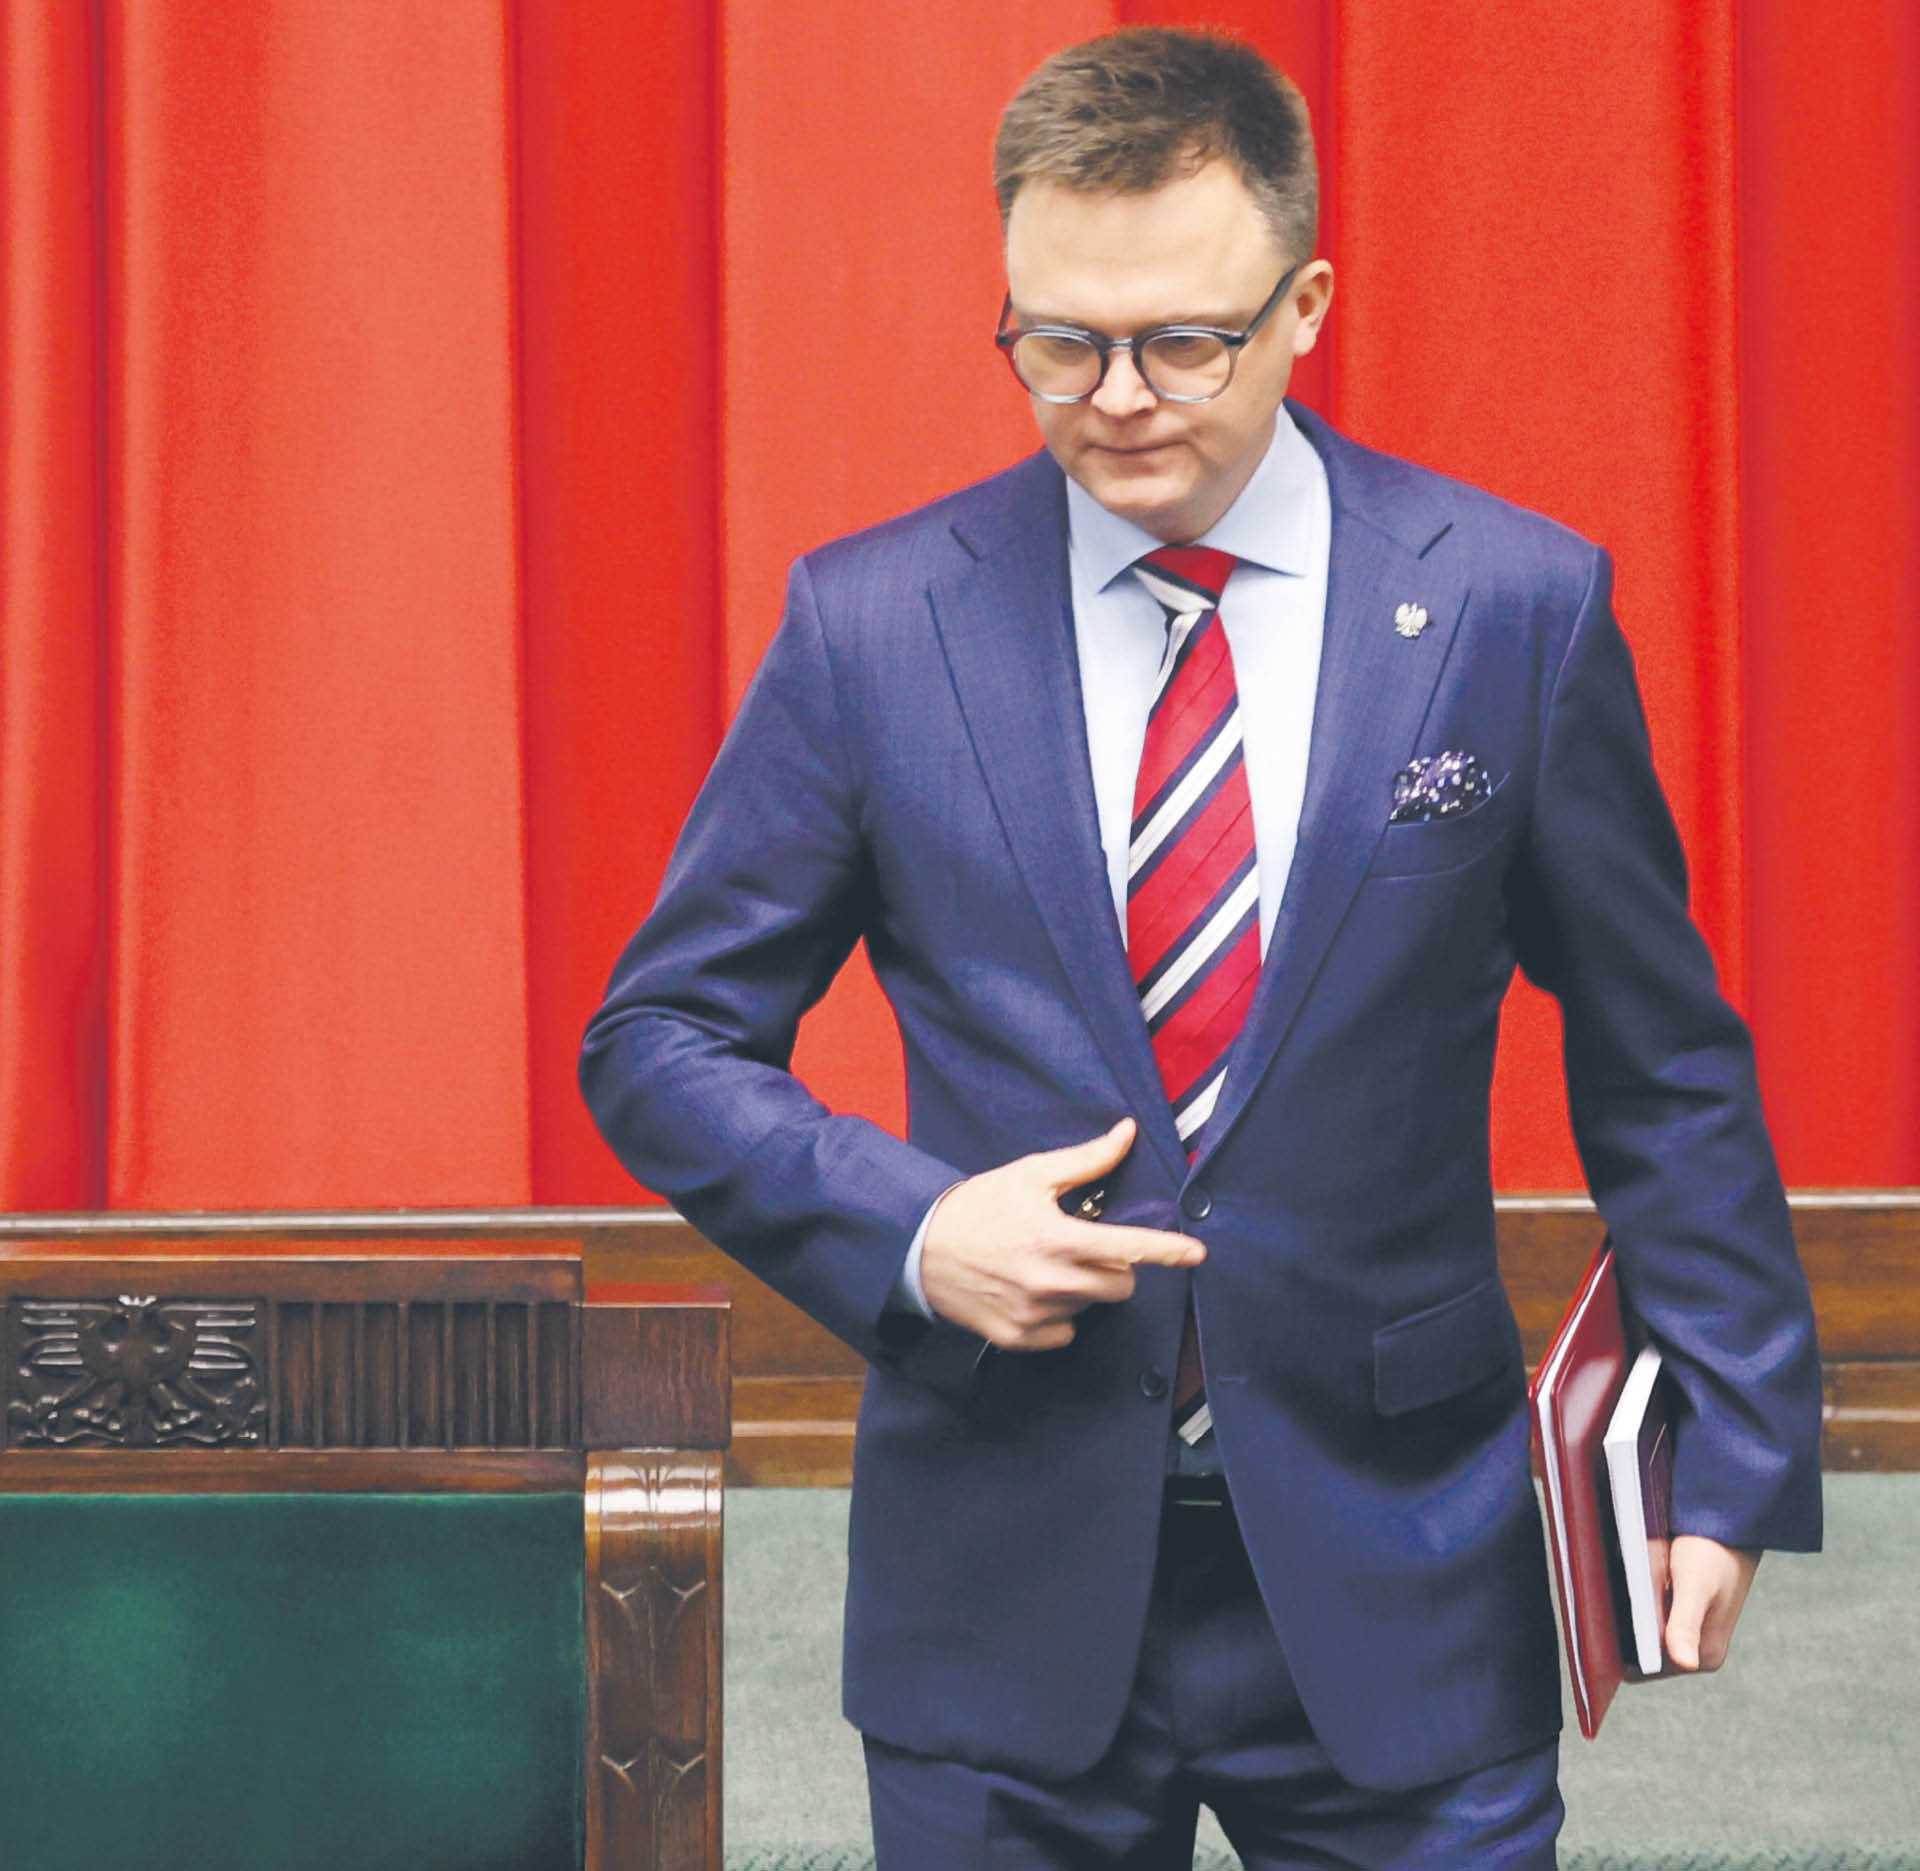 Marszałek Szymon Hołownia zderzył się z twardą polityką